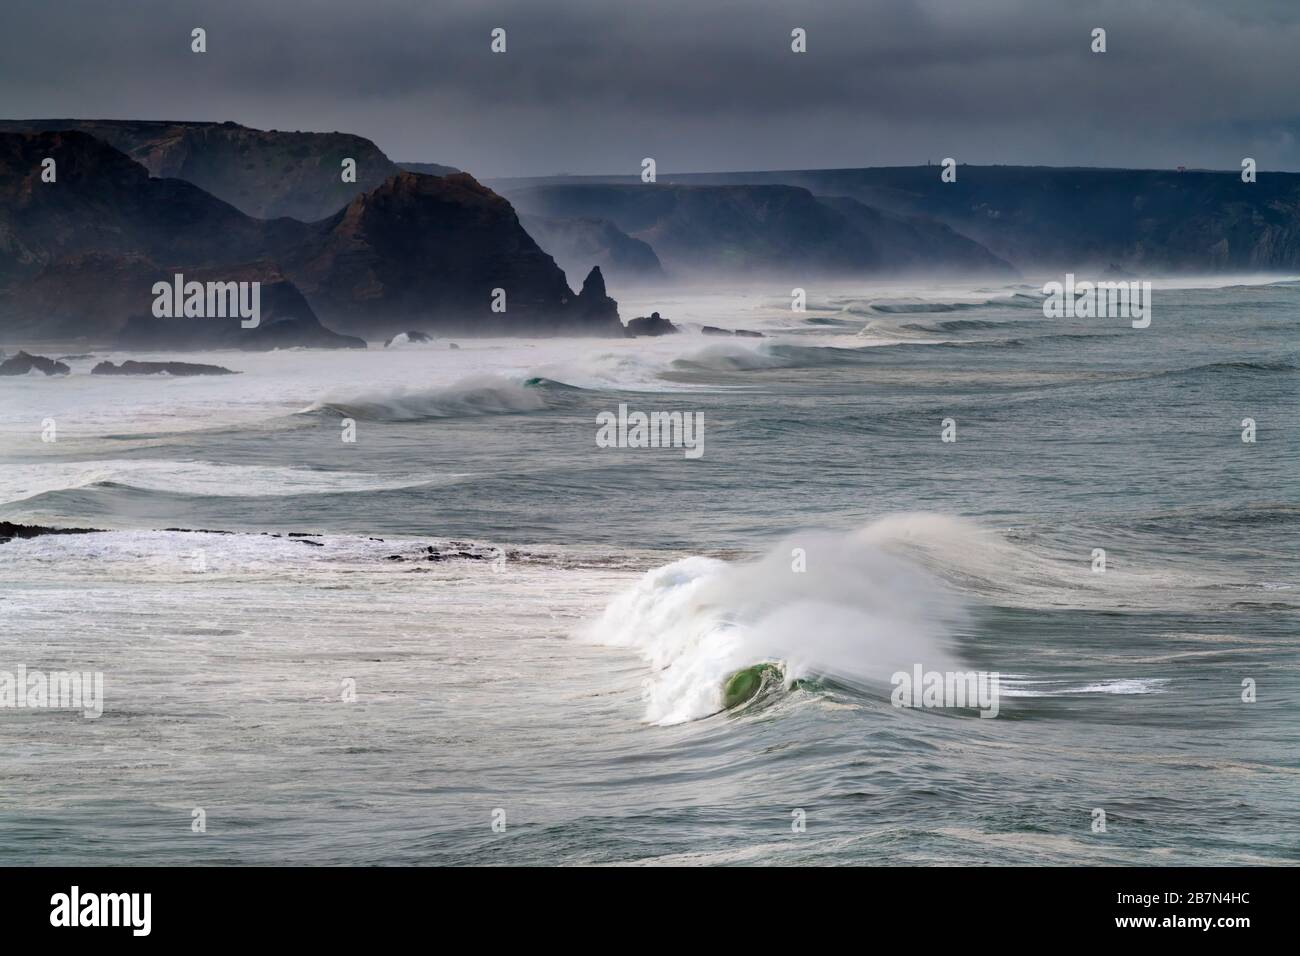 Vista panoramica della costa lungo la spiaggia di Amado (Praia do Amado) con grandi onde durante una tempesta, in Algarve, Portogallo Foto Stock